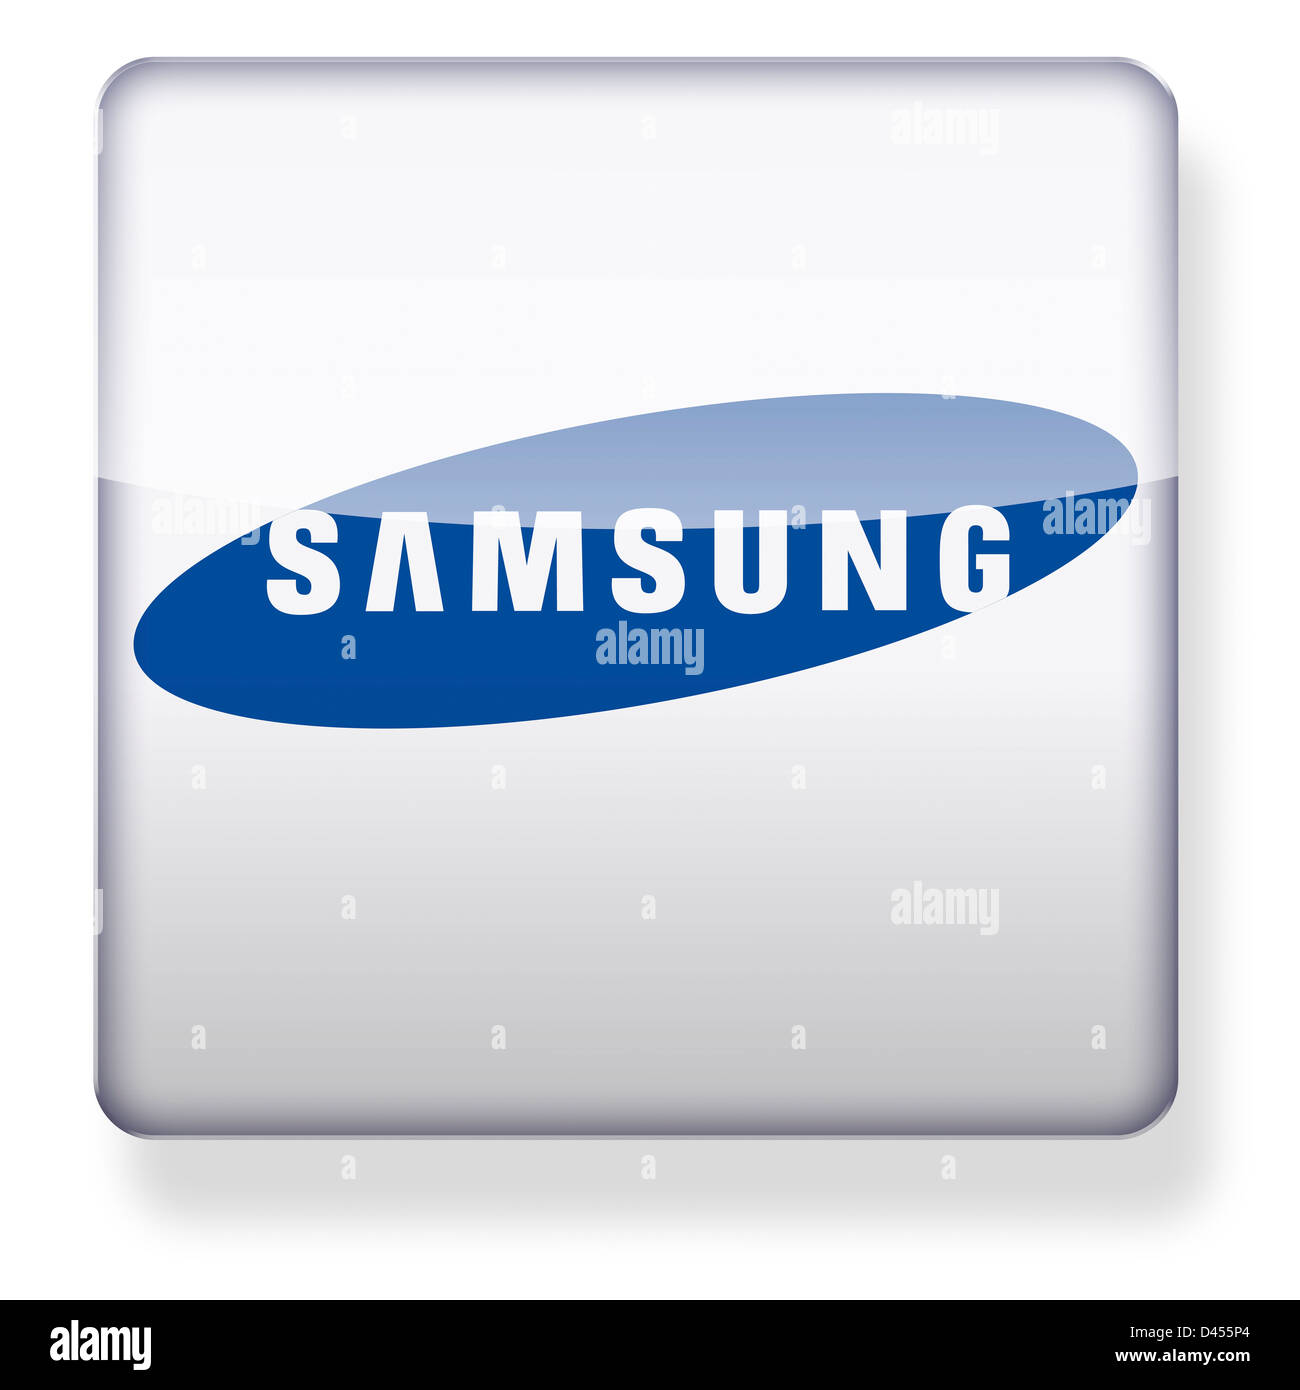 Samsung Banque de photographies et d'images à haute résolution - Alamy